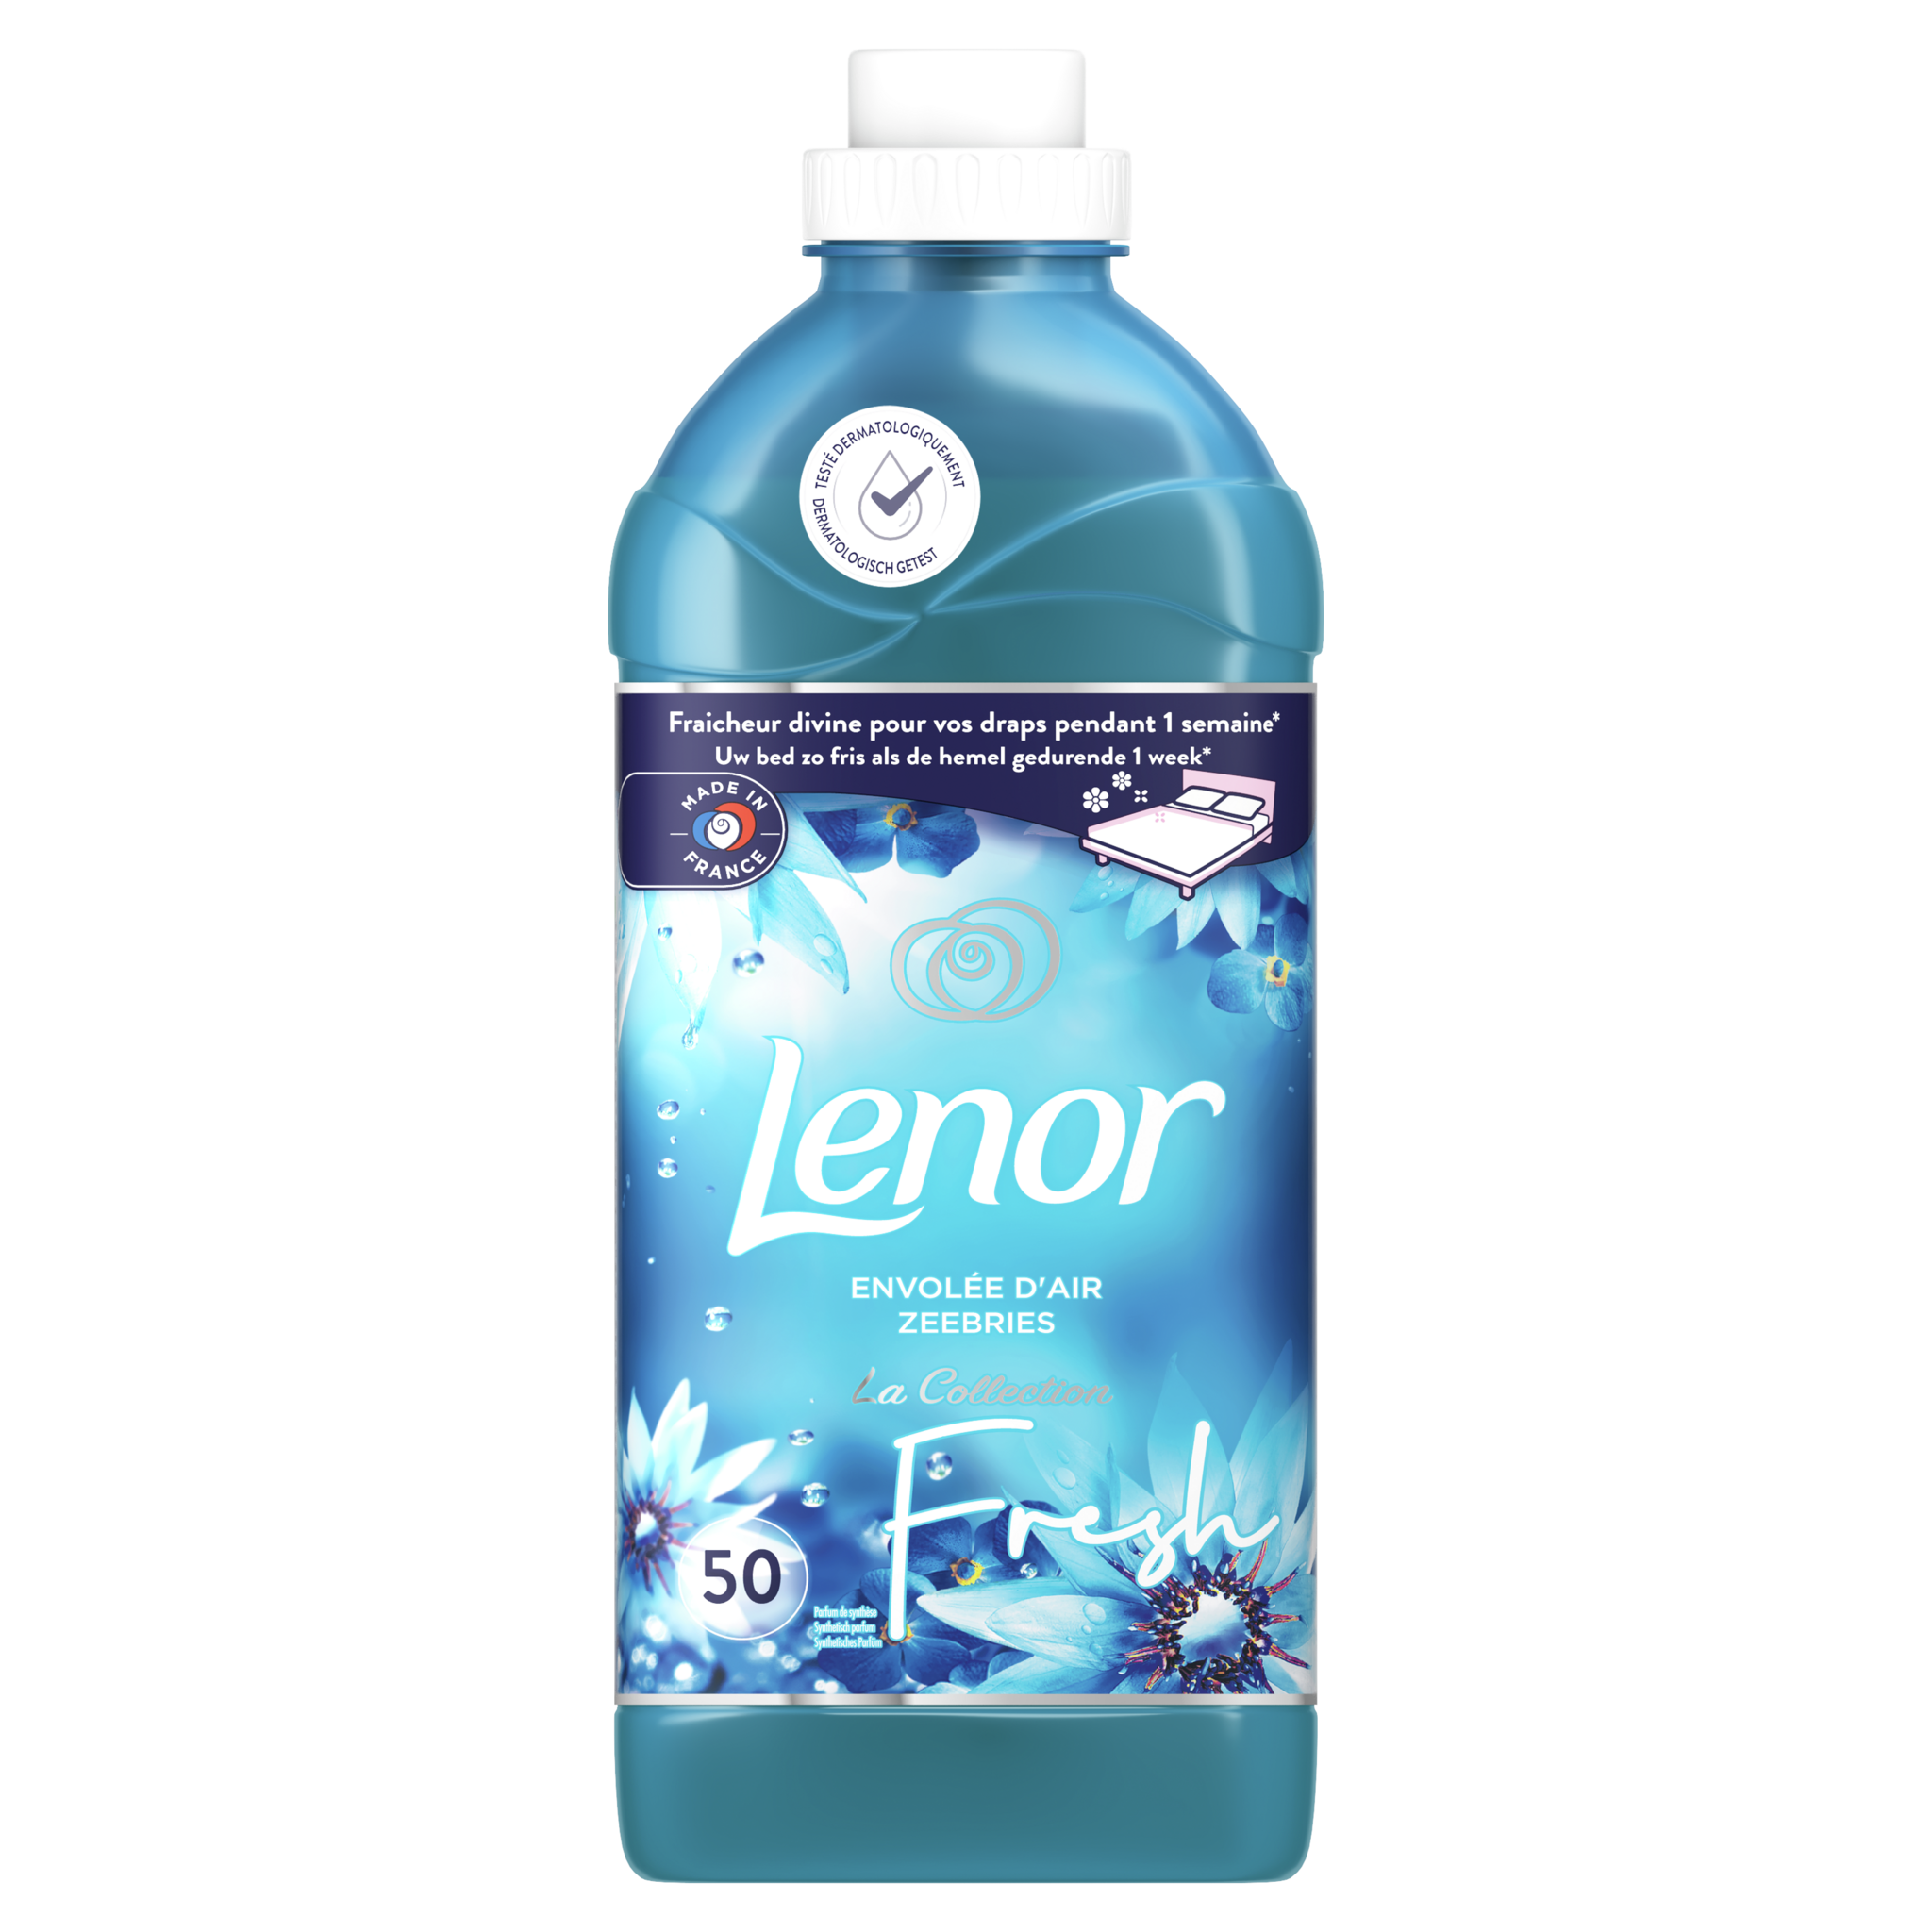 LENOR Adoucissant liquide envolée d'air frais 50 doses 1.15l pas